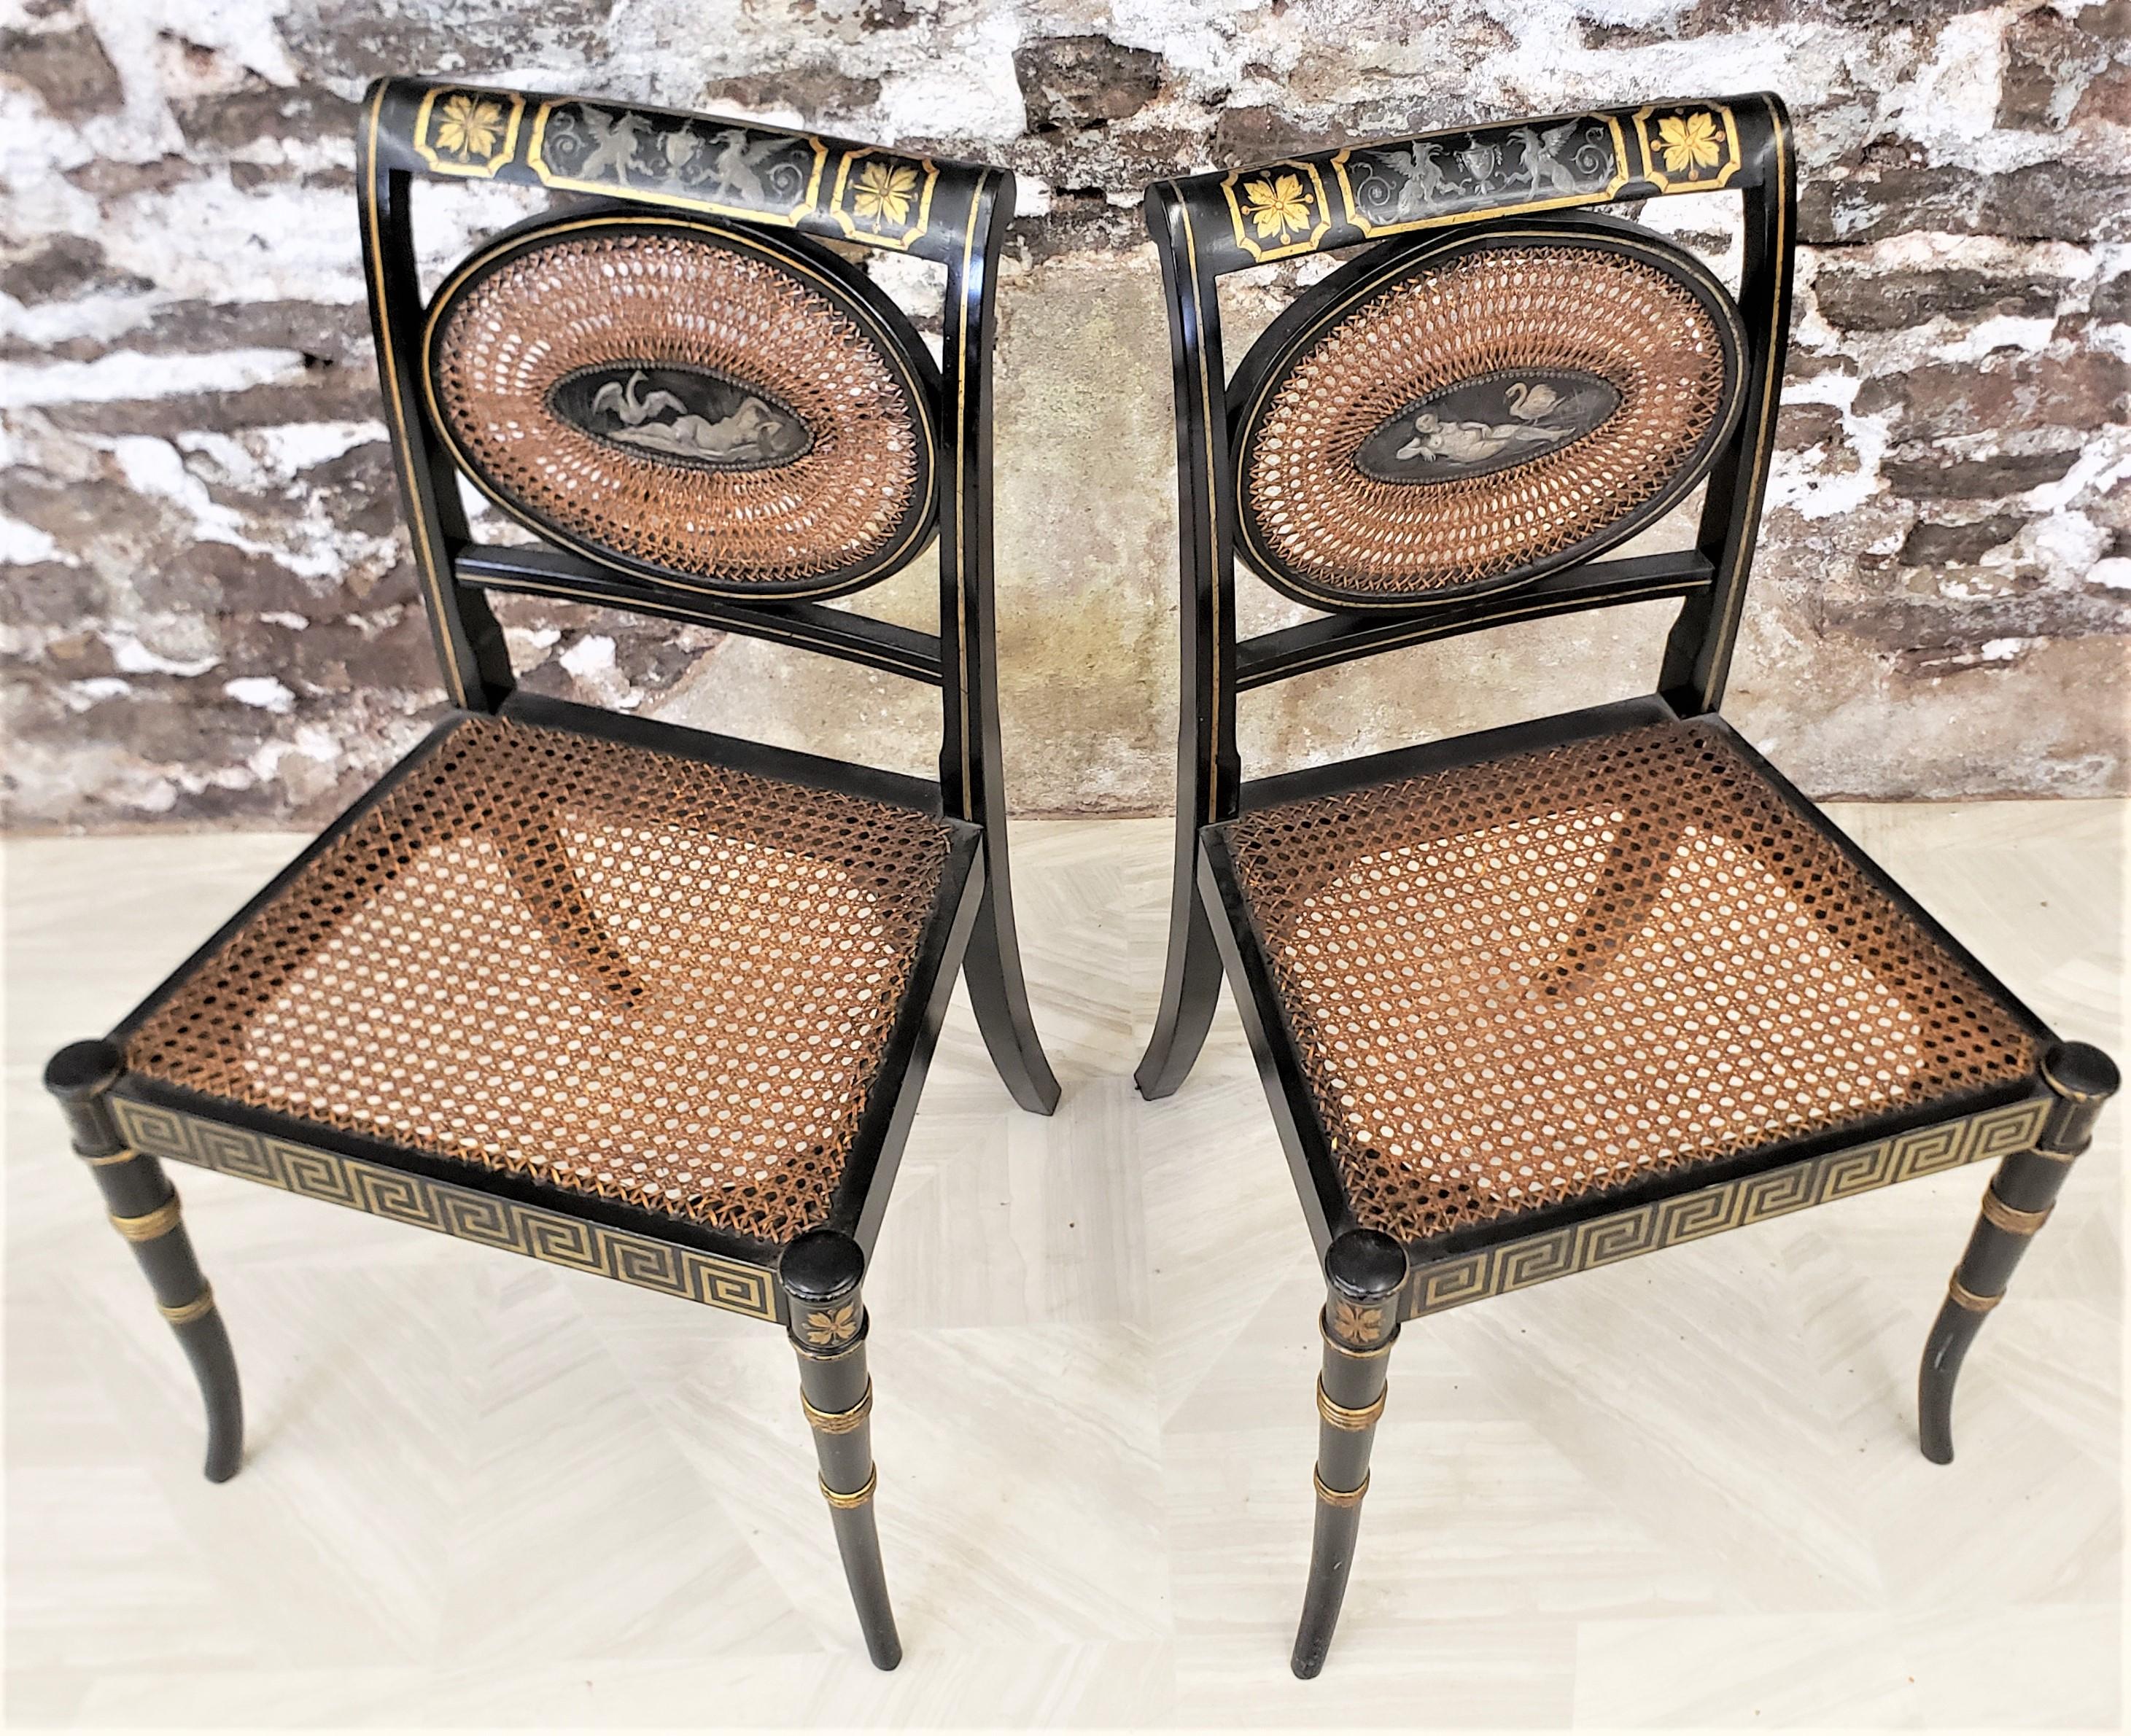 Dieses Paar antiker Stühle ist unsigniert, stammt aber vermutlich aus den Vereinigten Staaten und wurde um 1920 im Regency- oder Hollywood-Regency-Stil gefertigt. Die Stühle haben einen Rahmen aus Kiefernholz mit einer ebonisierten Oberfläche und